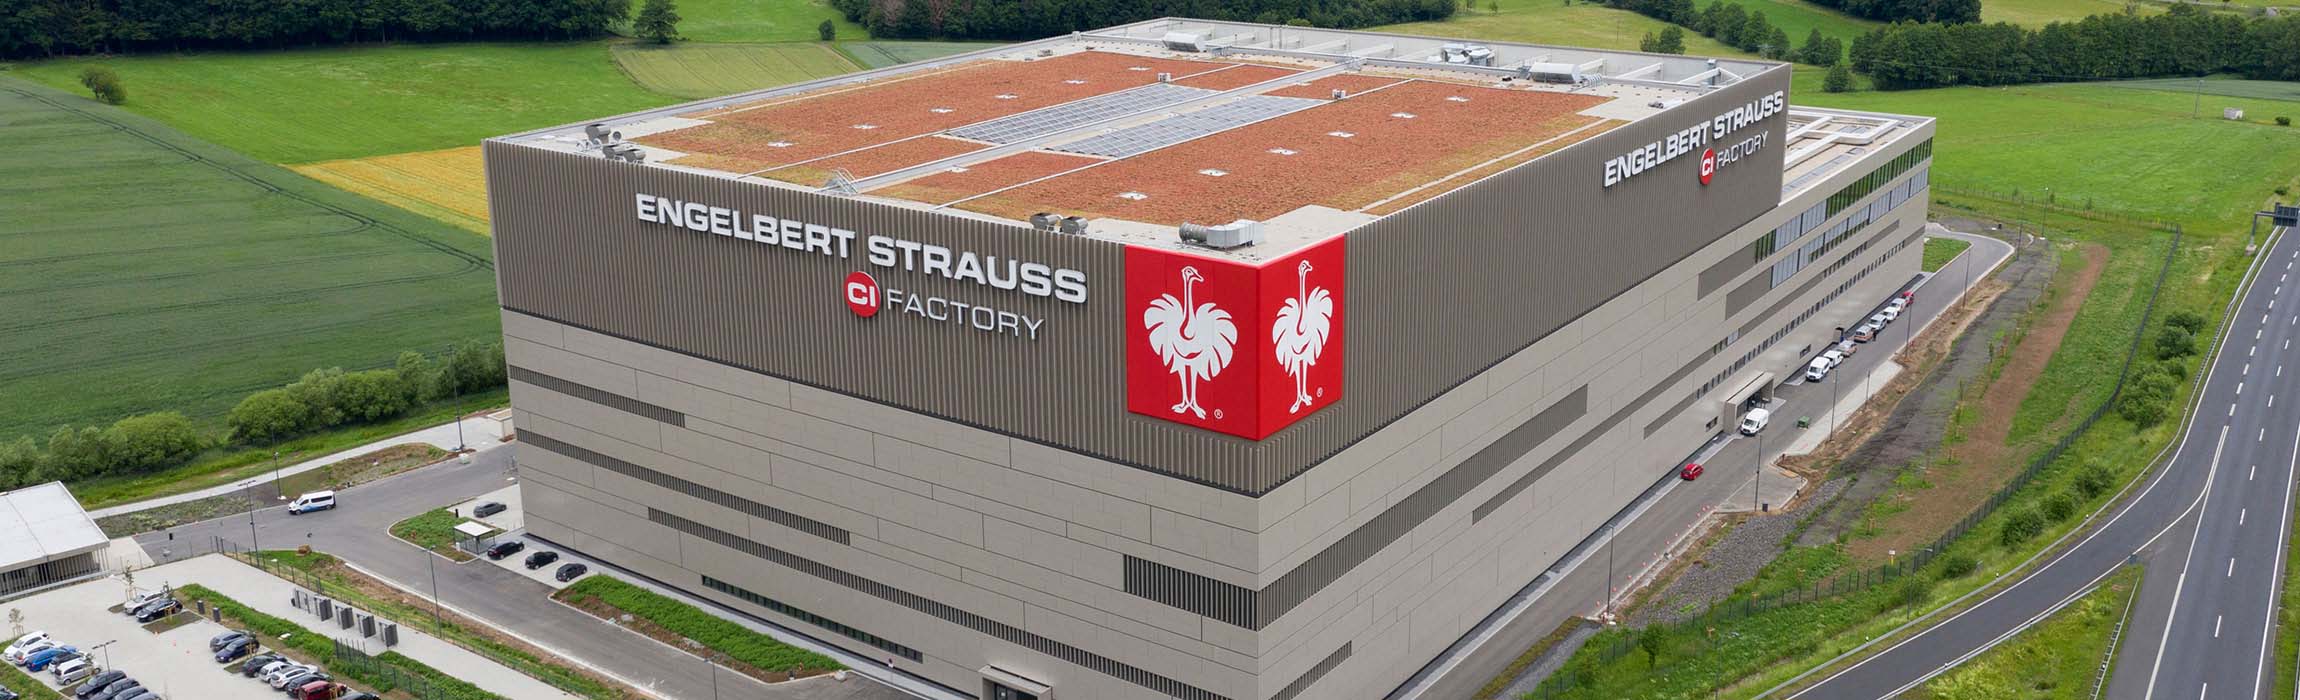 Projekt CI Factory beim Logistikkongresses 2020 ausgezeichnet